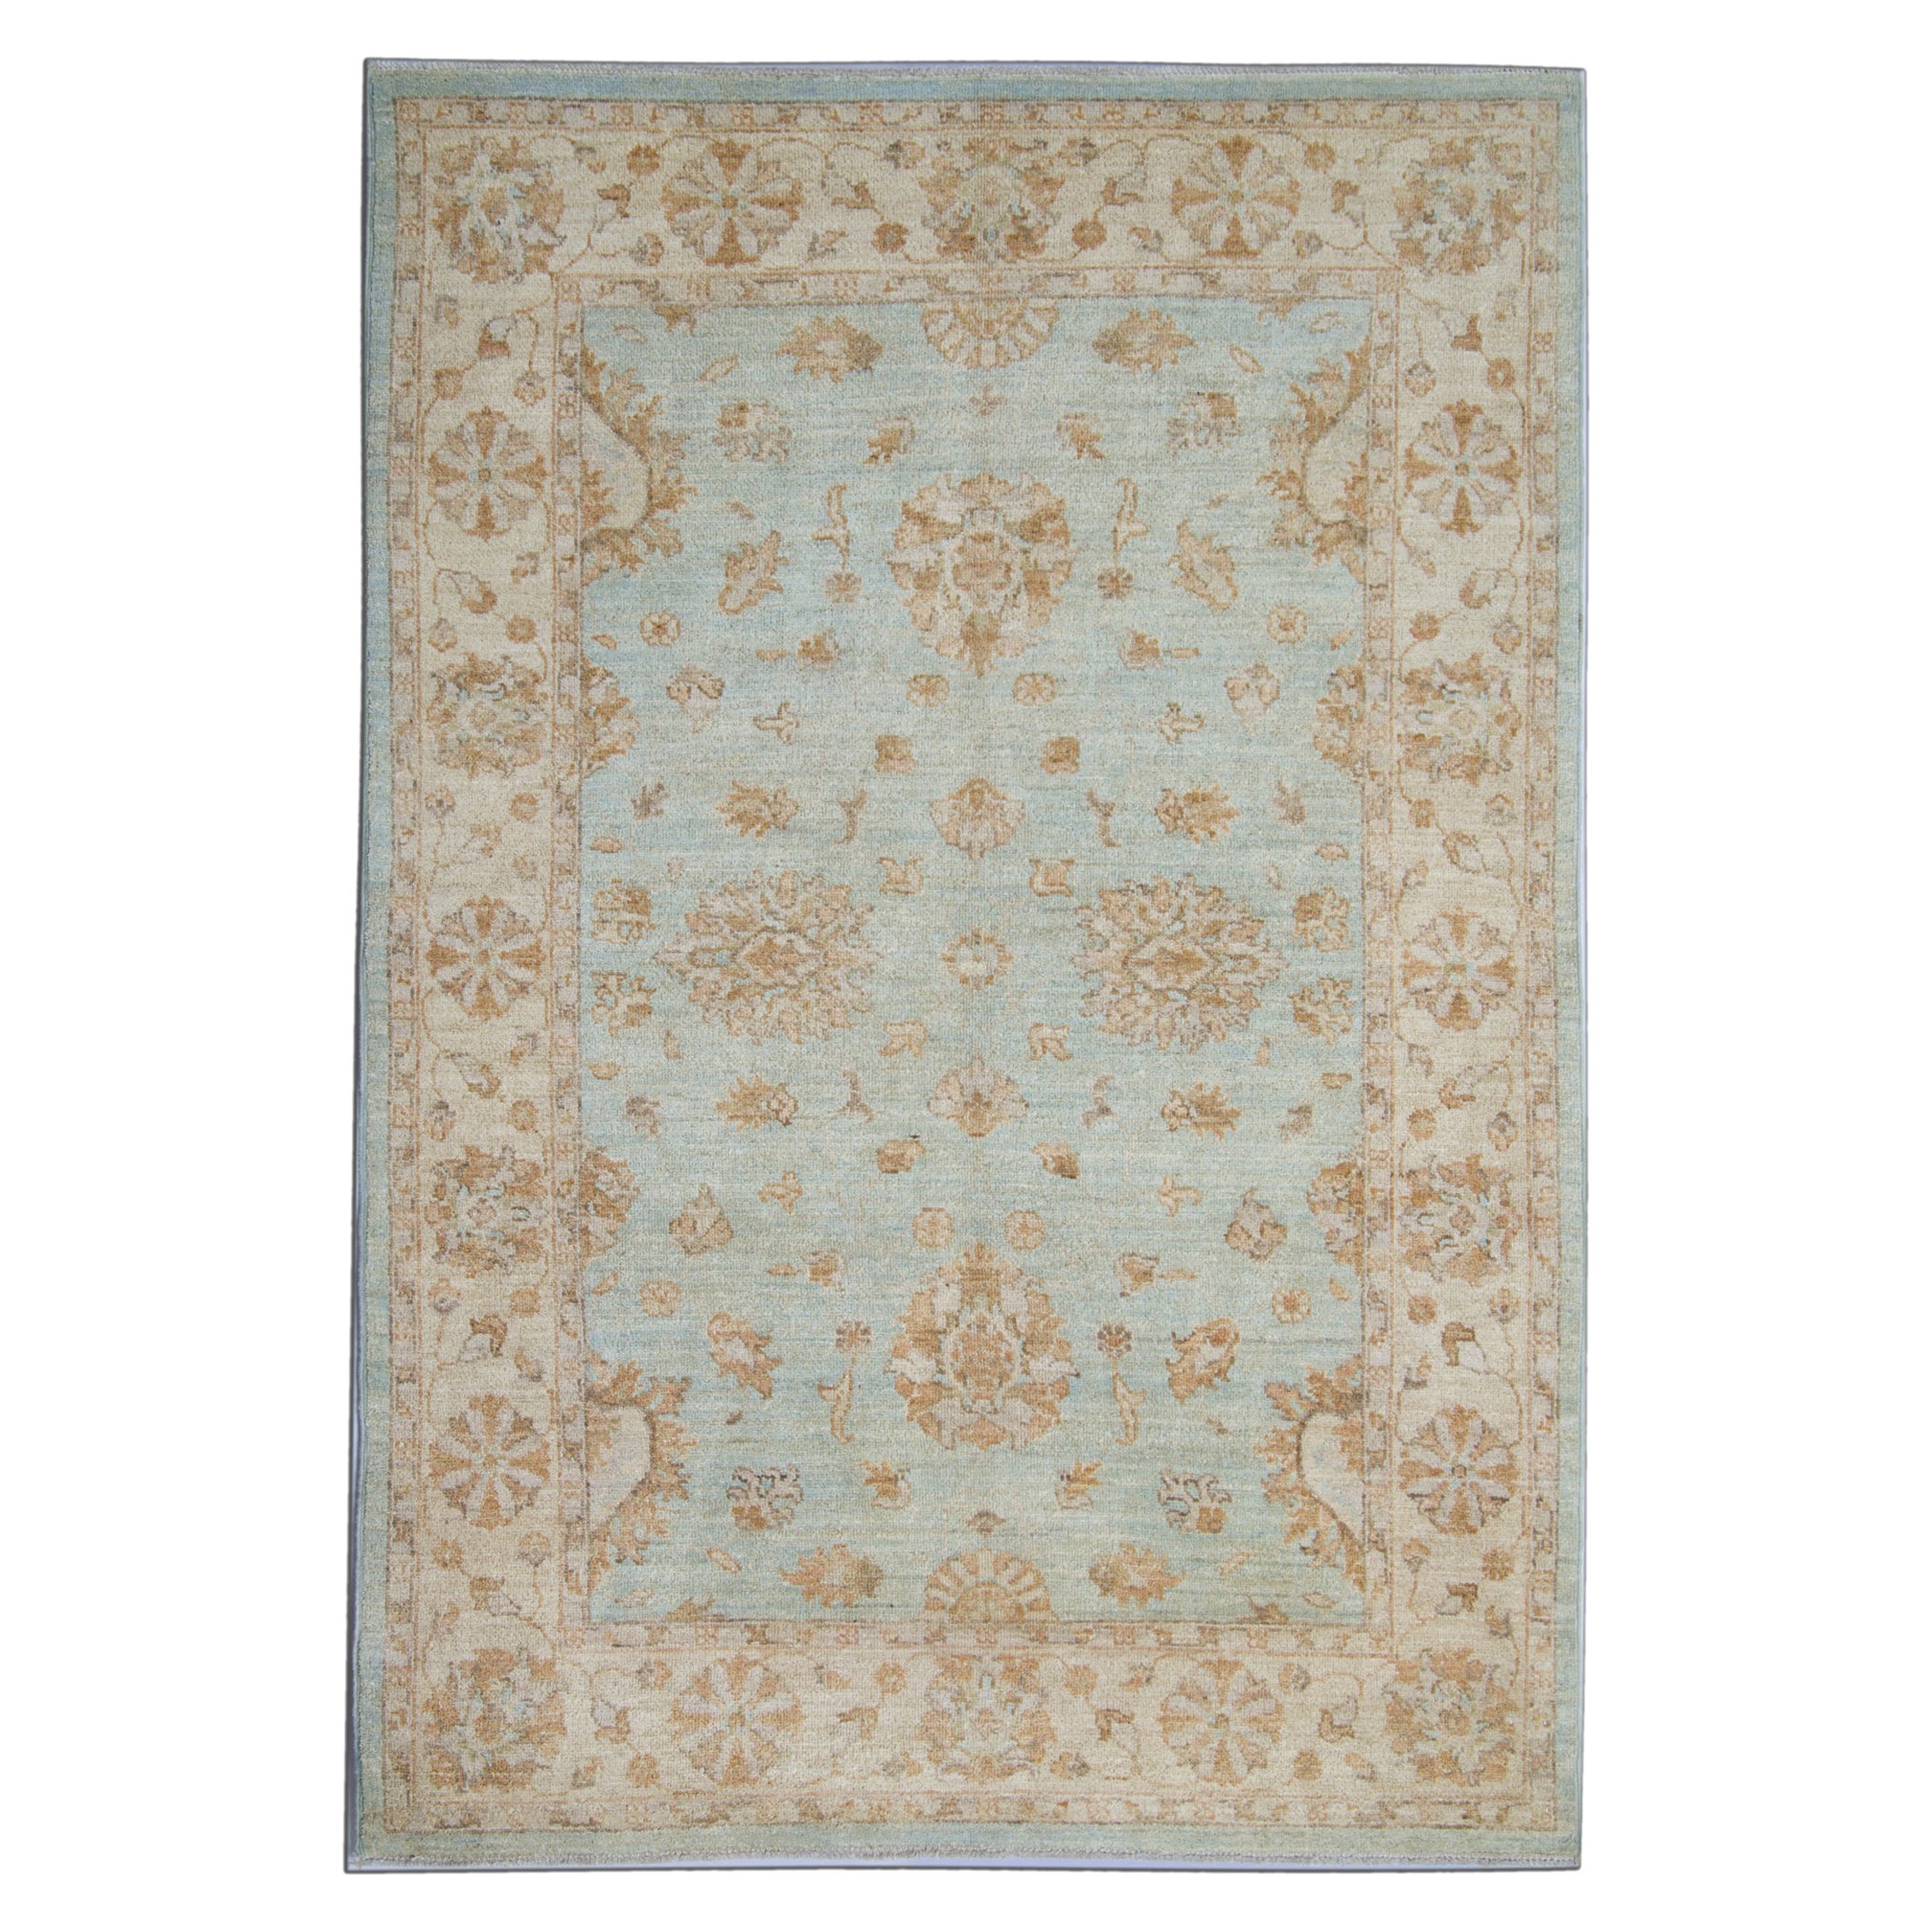 Handgewebter blauer Teppich, traditioneller geblümter Teppich im Allover-Design